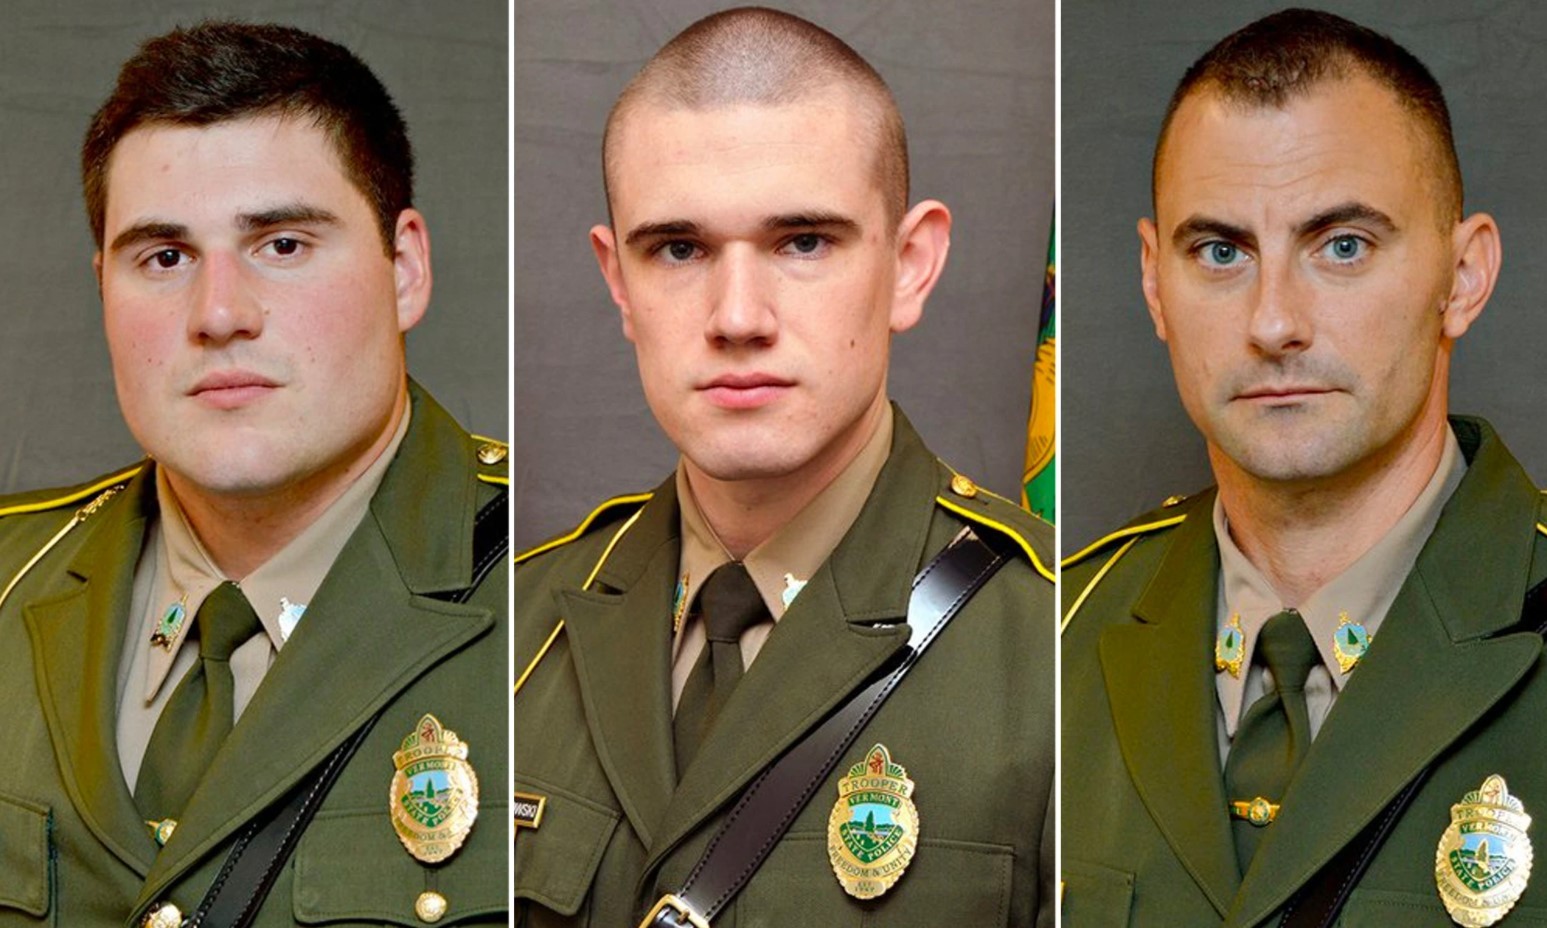 Os soldados Shawn Sommers, Raymond Witkowski e David Pfindel renunciaram após as acusações (Foto: reprodução/ NY Post/ Vermont State Police)